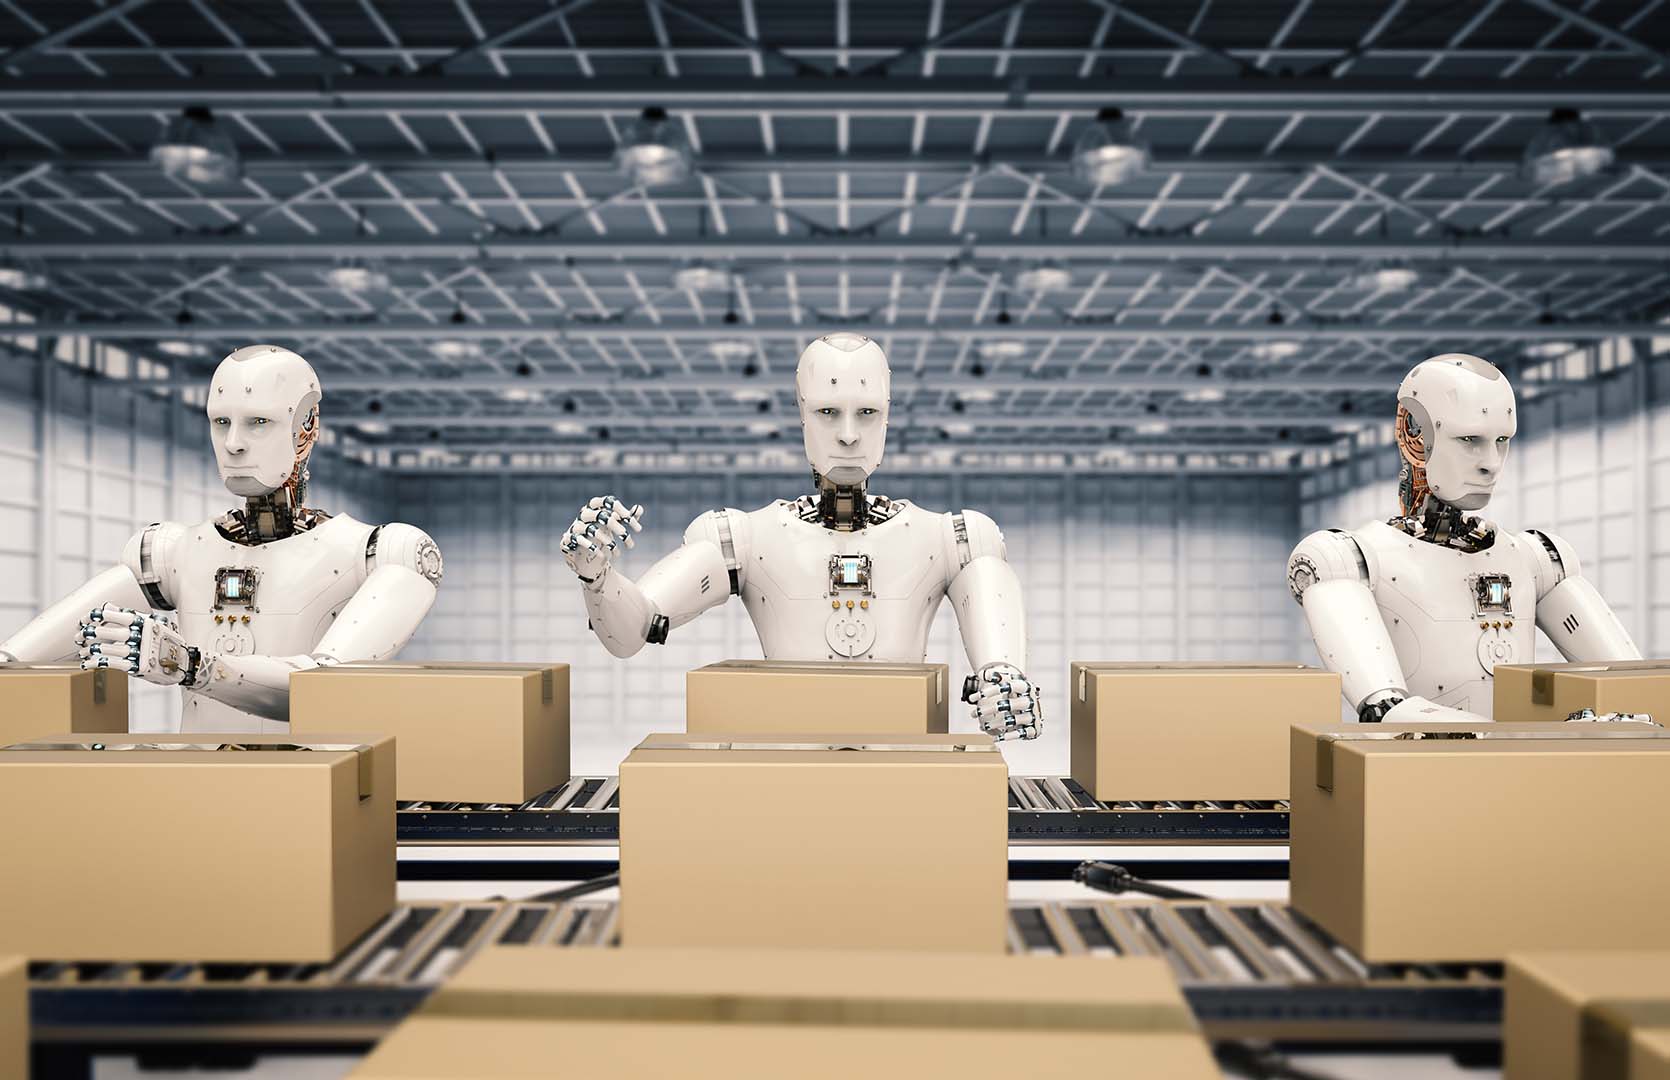 Robots superan en número a empleados en esta nueva estación de envíos de Amazon en Florida